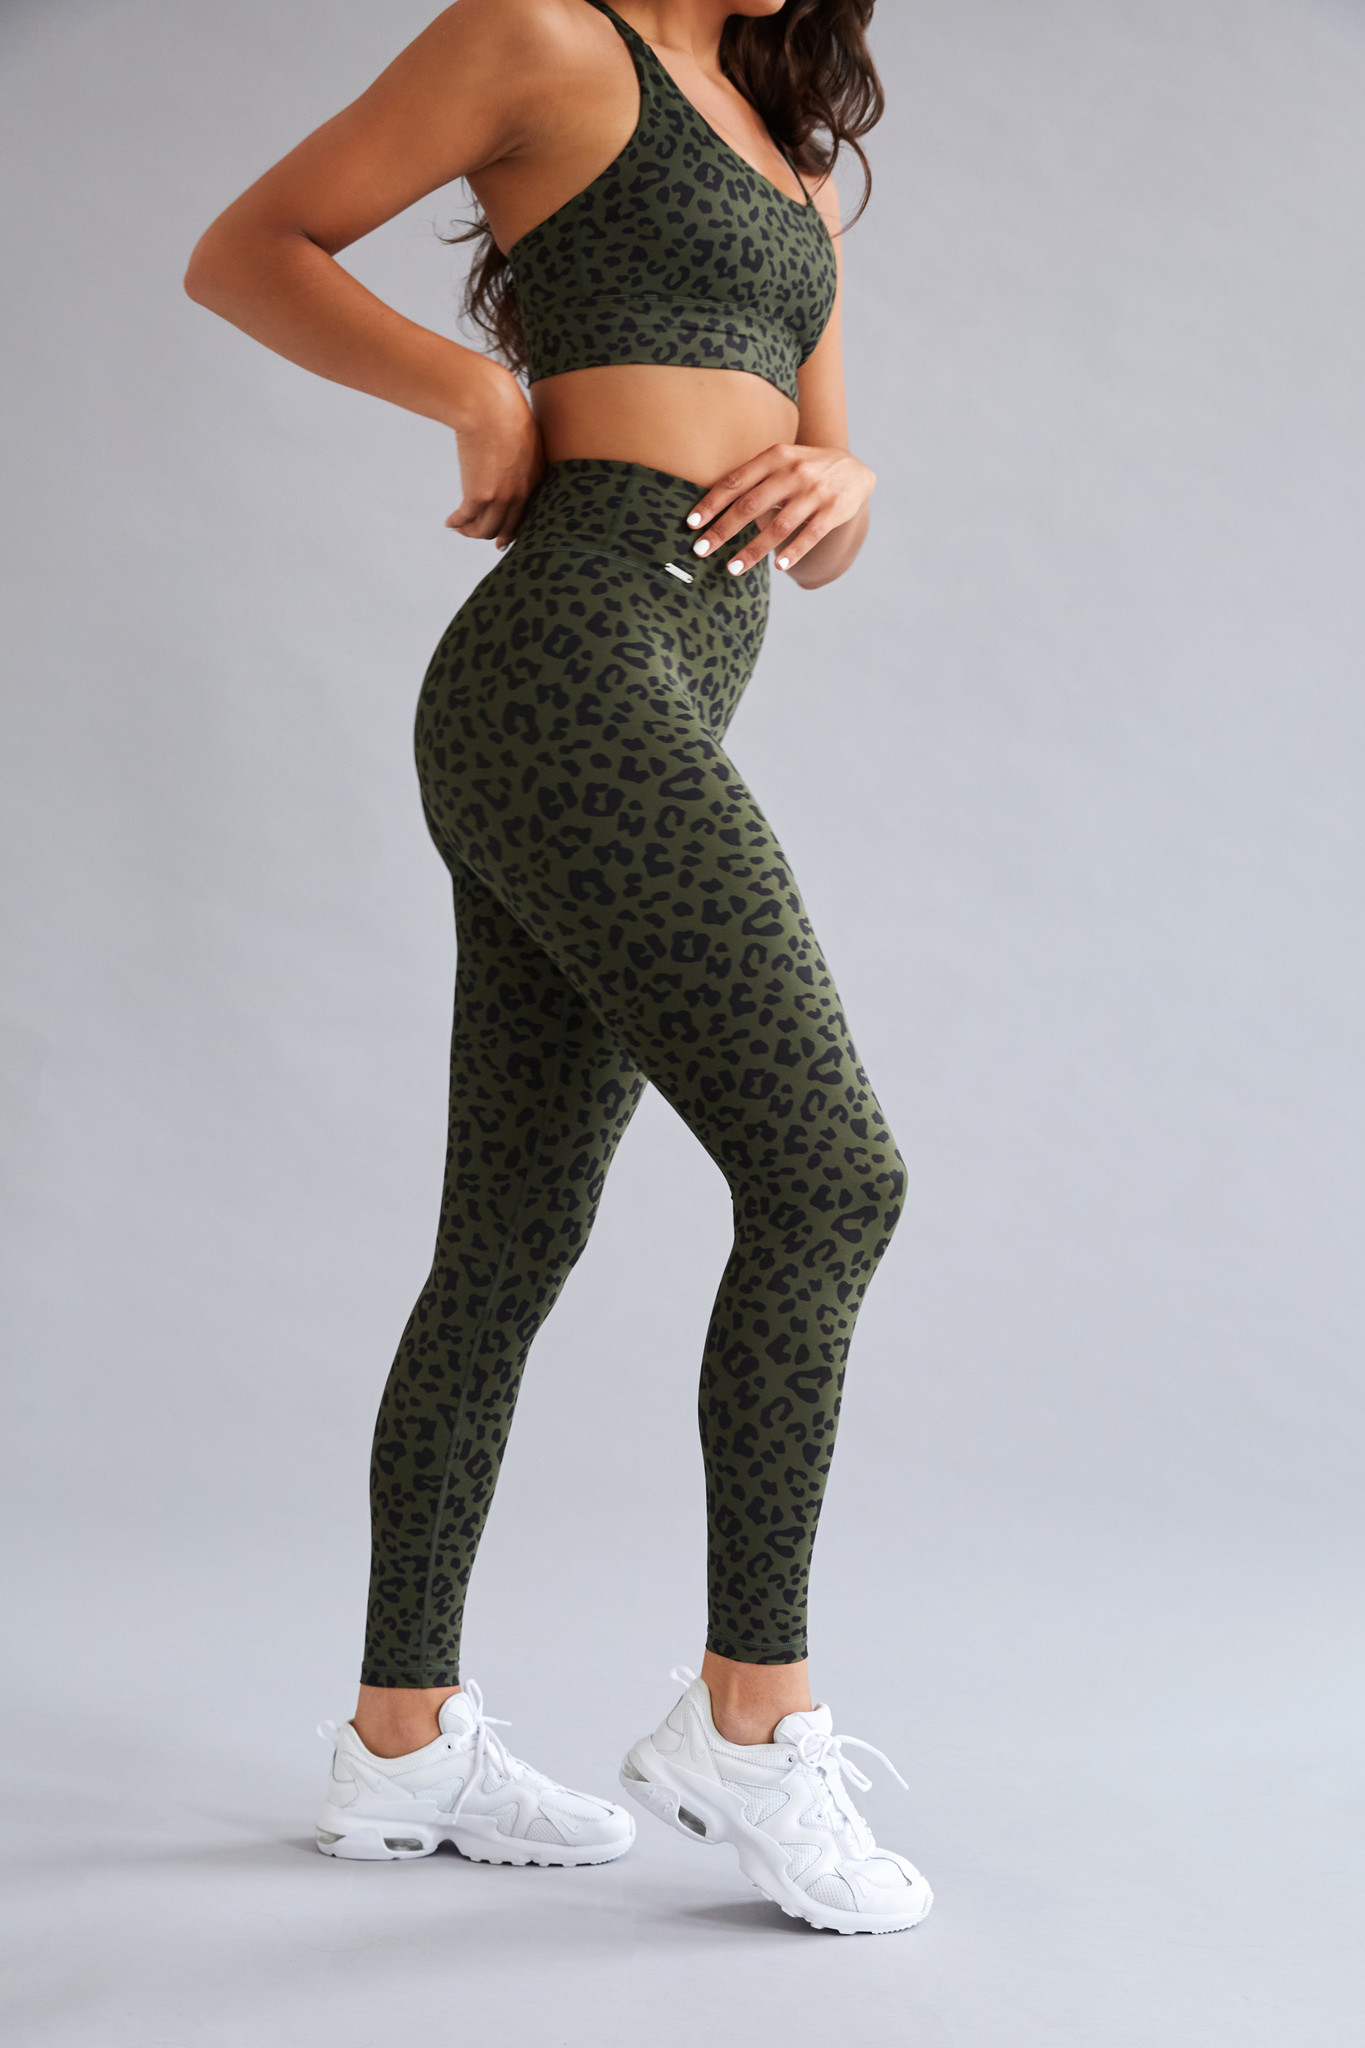 Boden Leggings Leopard Green Size 12R Womens